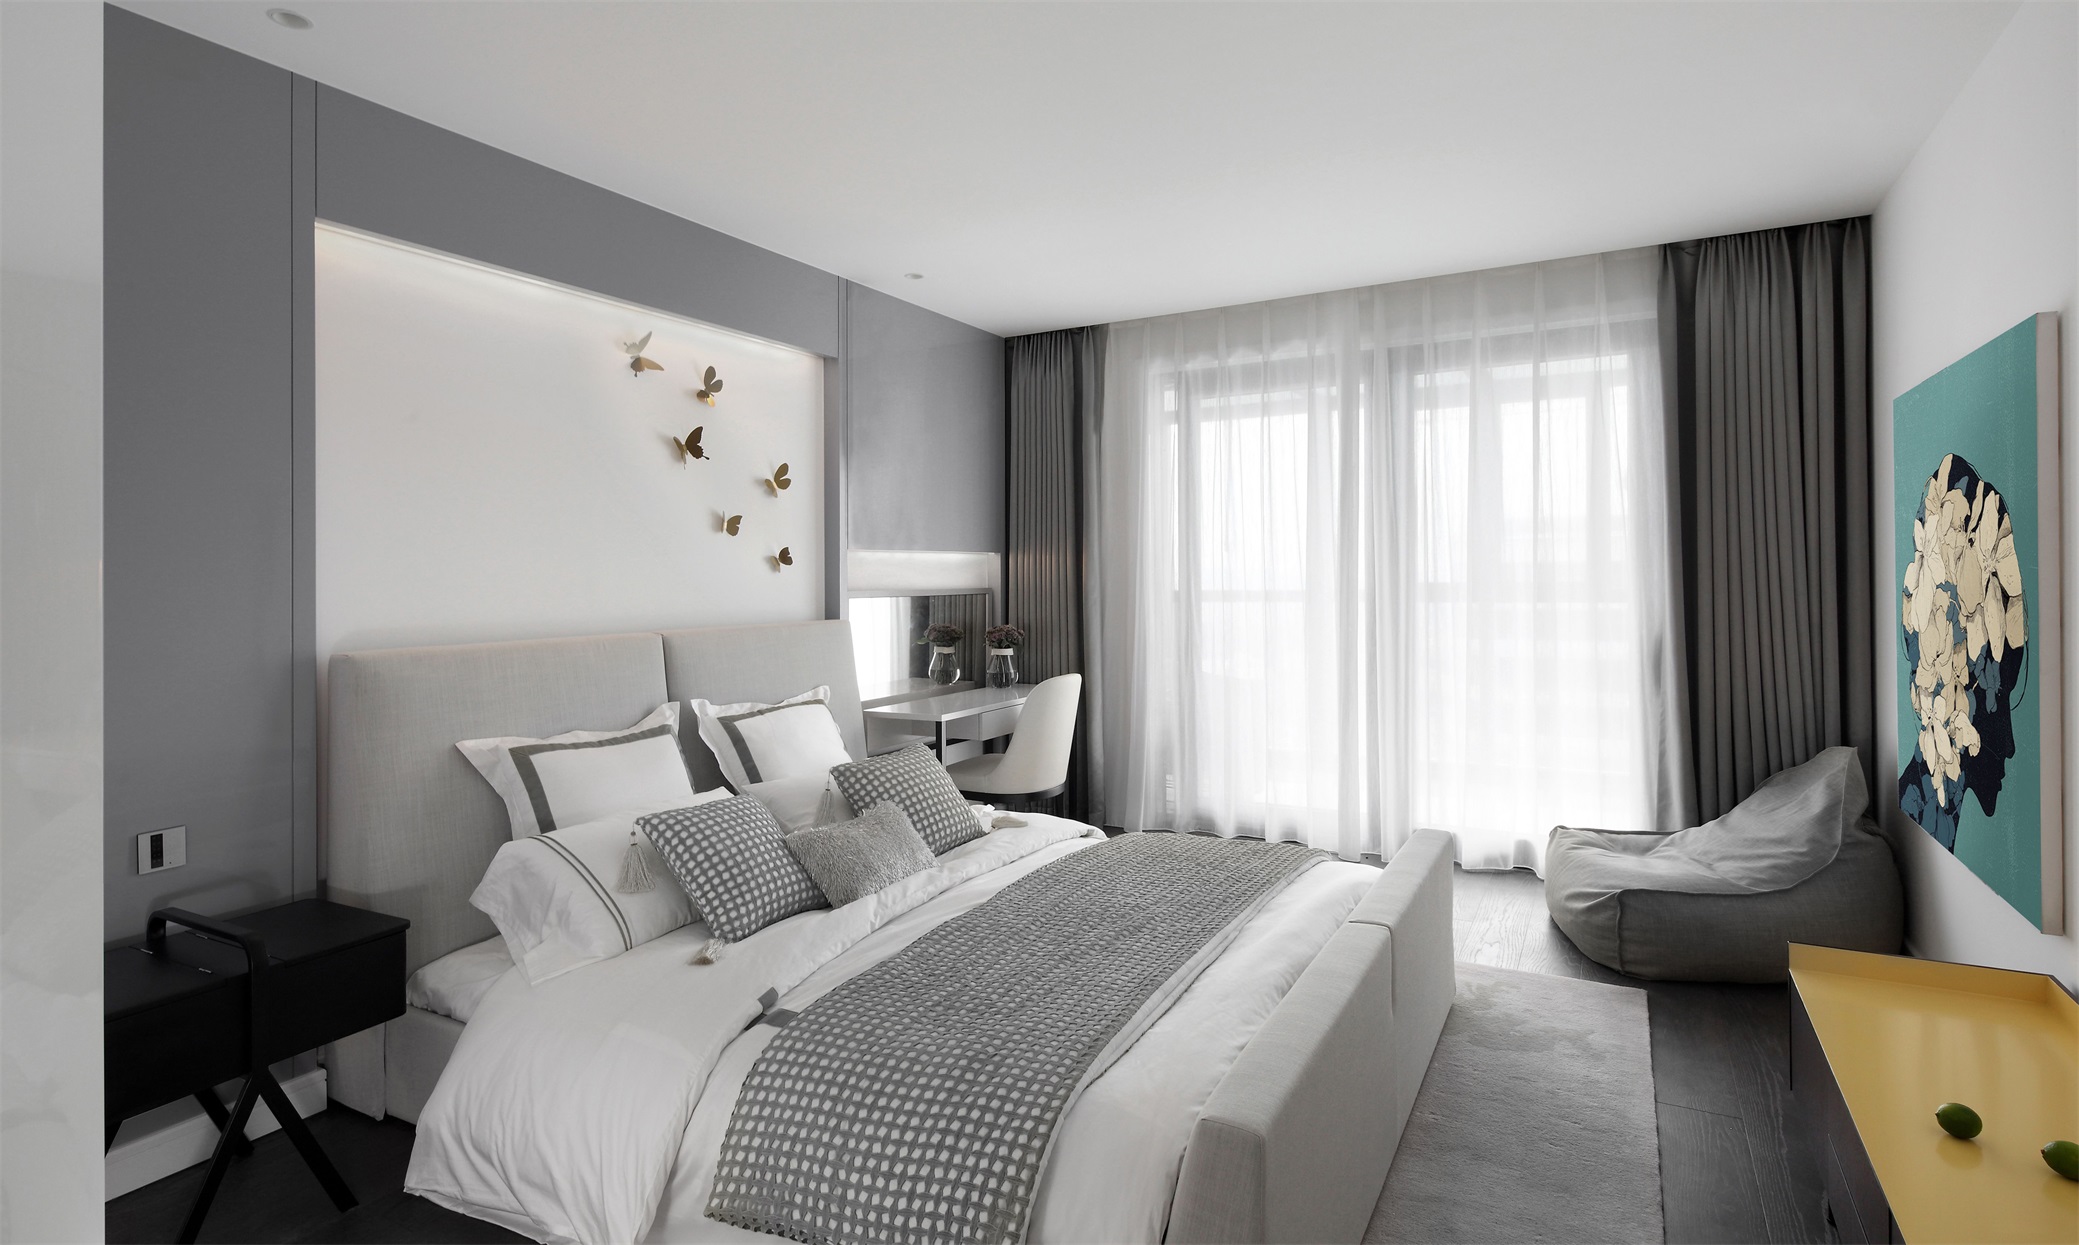 侧卧灰色的背景墙设计，表现出卧室空间自然持久的生命力，搭配白色床铺软装，空间温馨素雅。